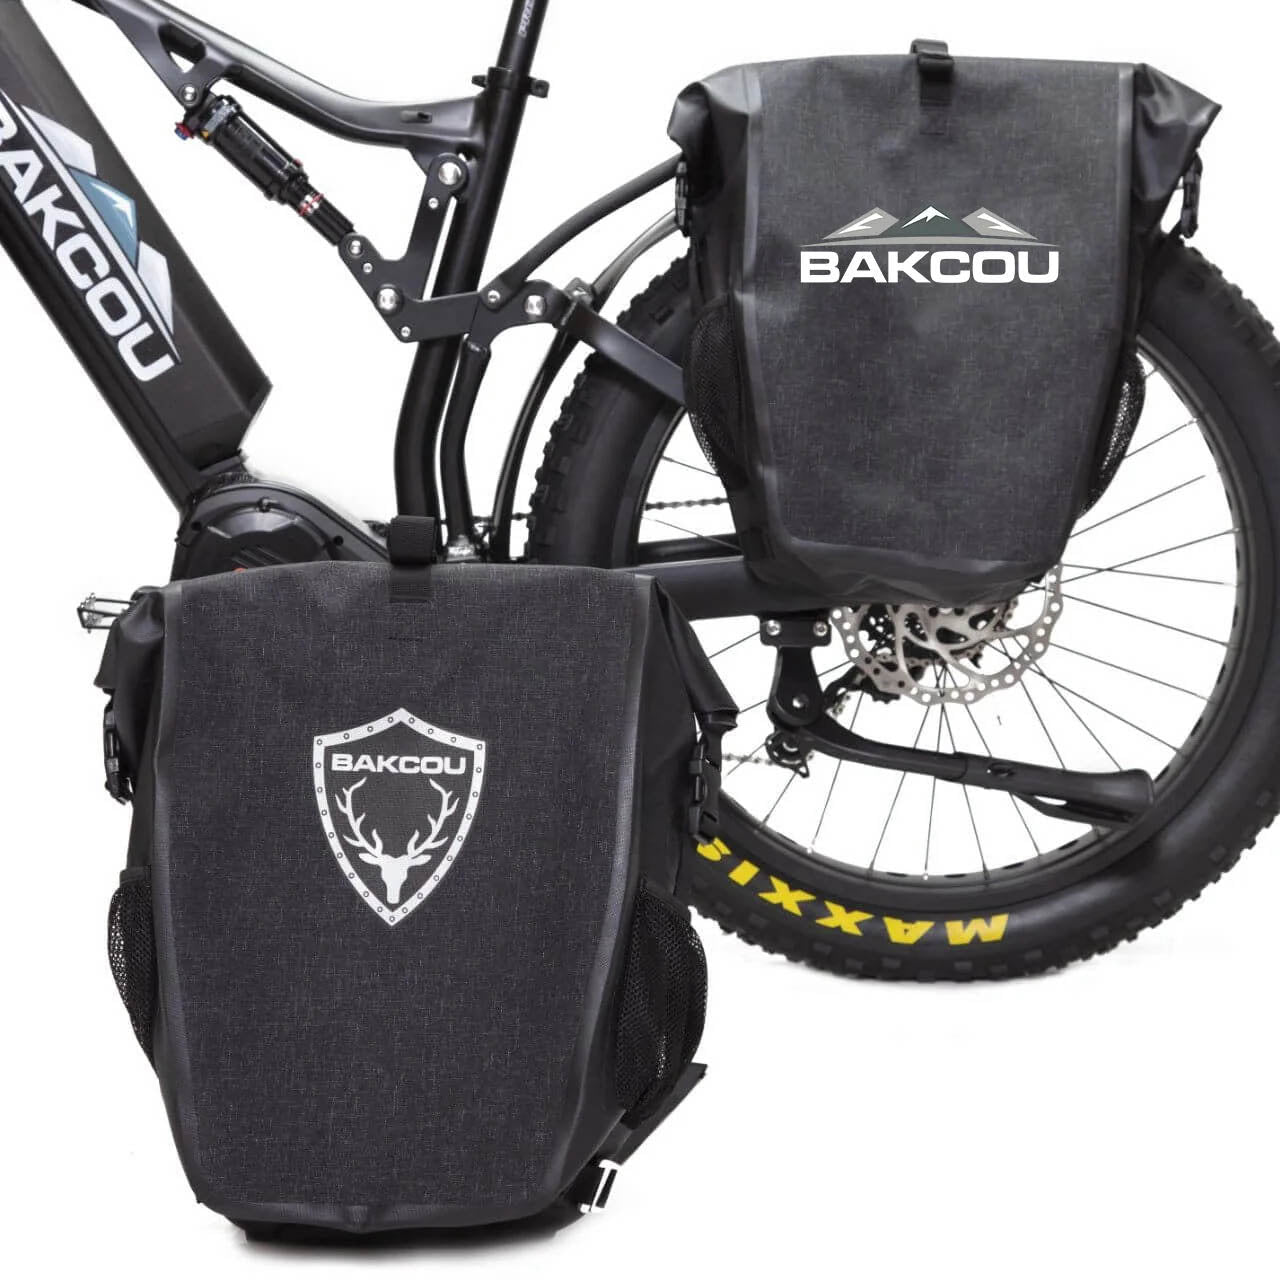 Bakcou Pannier Bags | MunroPowersports.com